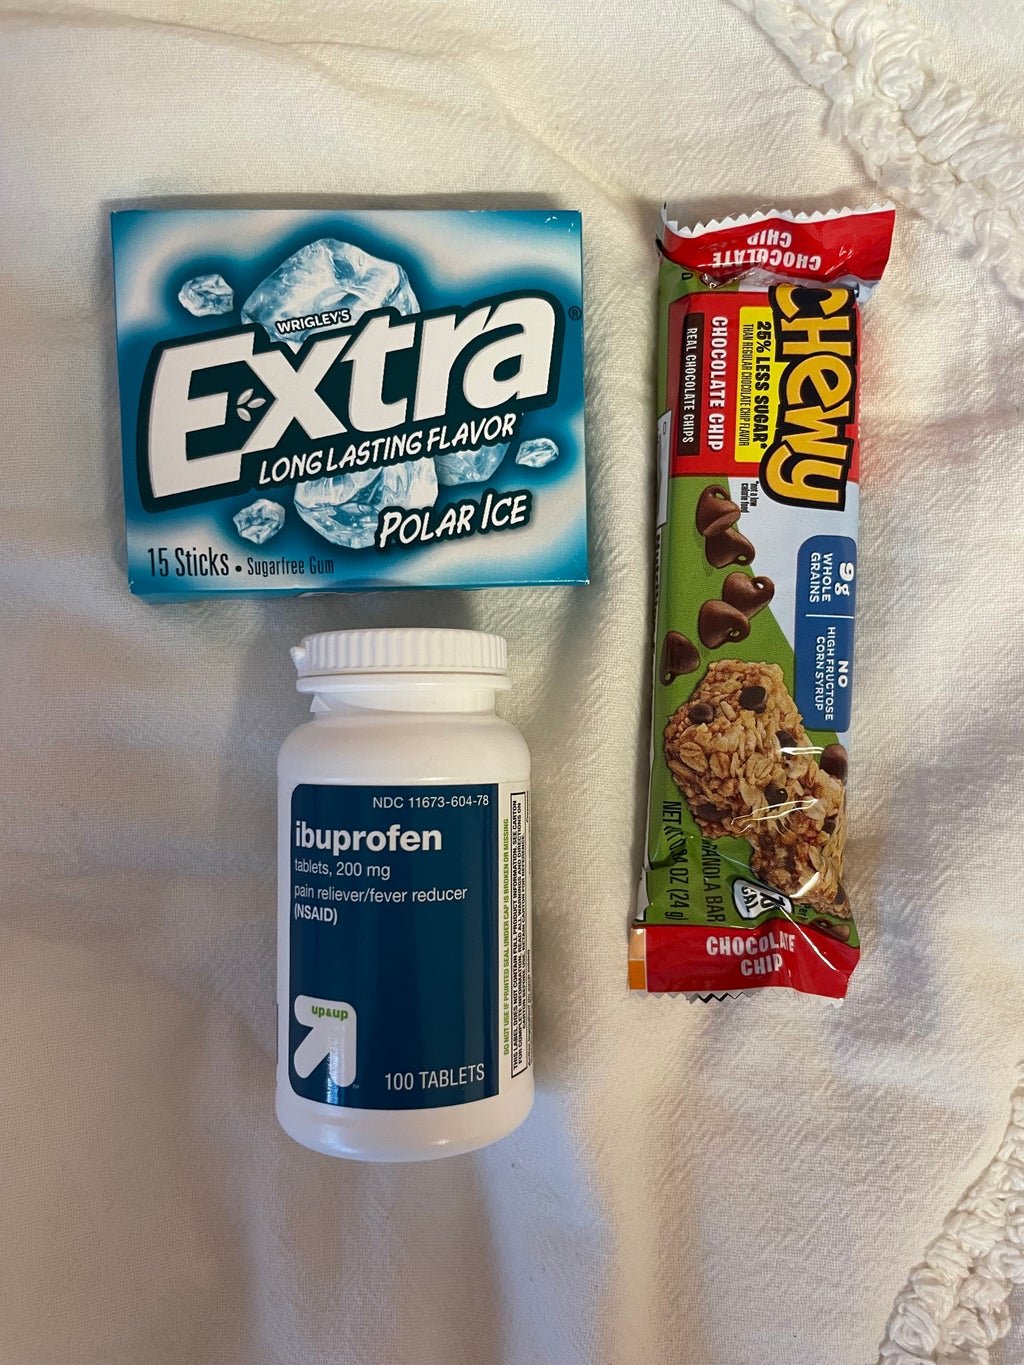 granola bar, gum and ibuprofen